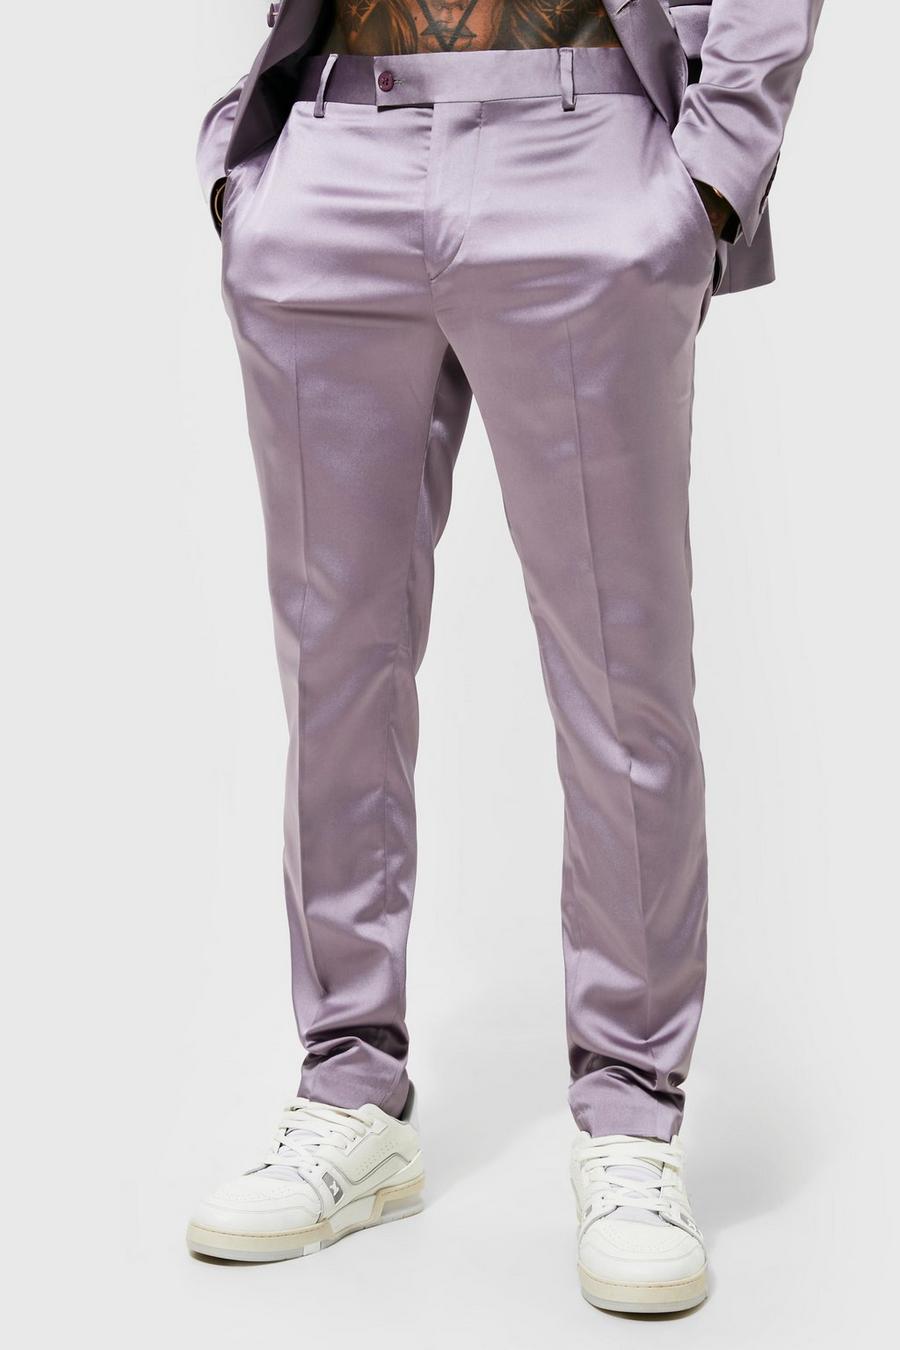 אפור grigio מכנסי חליפה מסאטן בגזרת סקיני